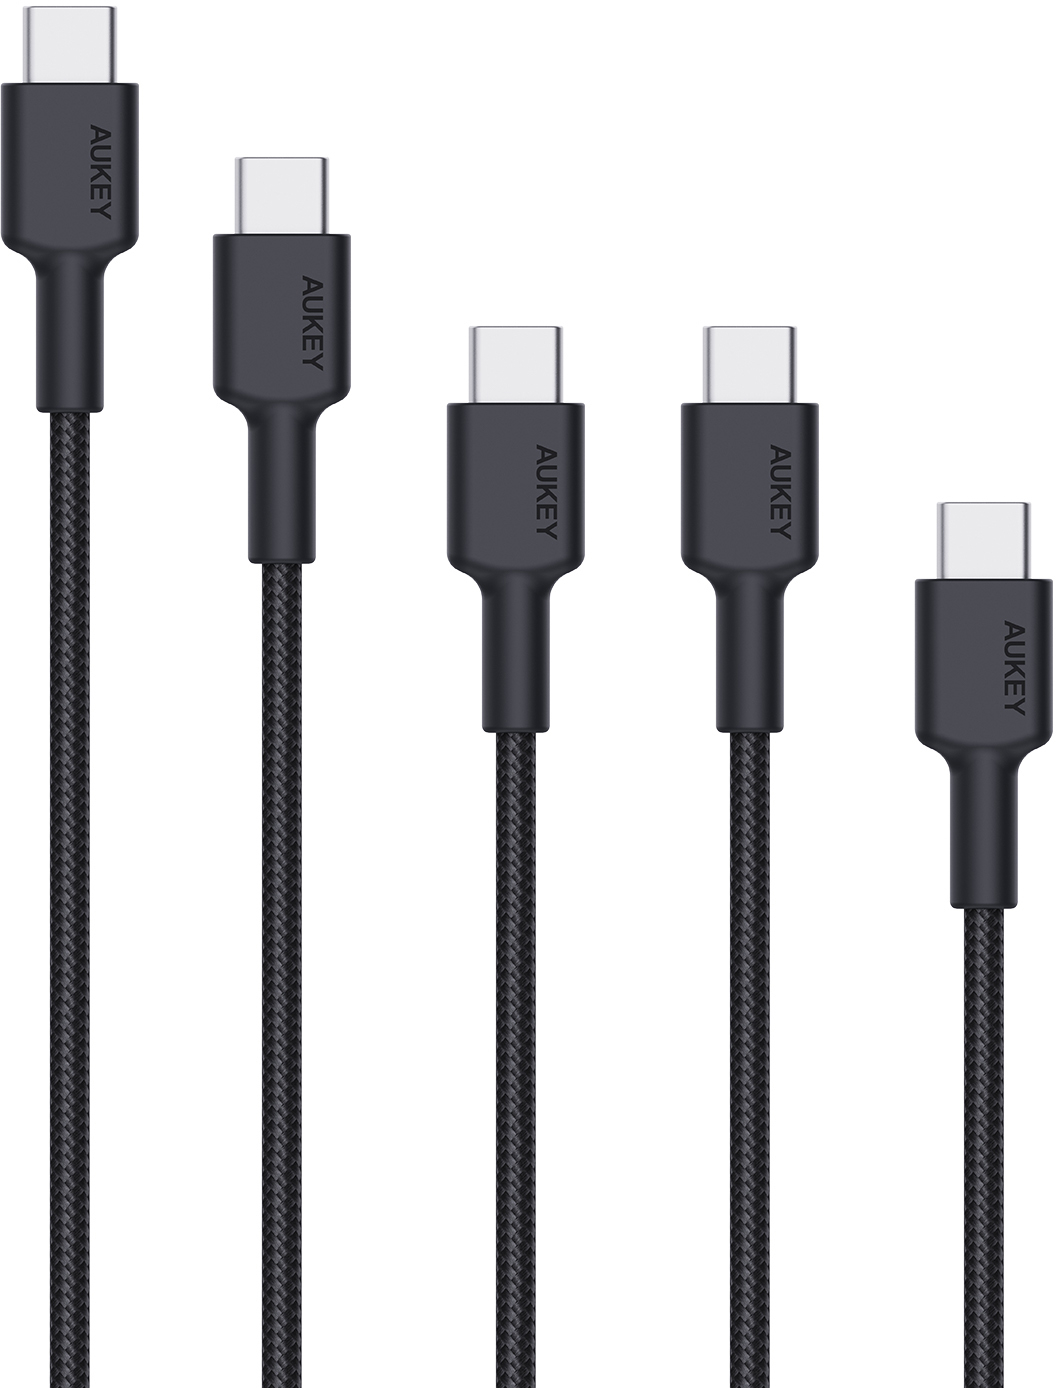 AUKEY USB-C-to-C Cable CB-CD37A 5 Pack,1x 2m,3x1m,1x0.5m